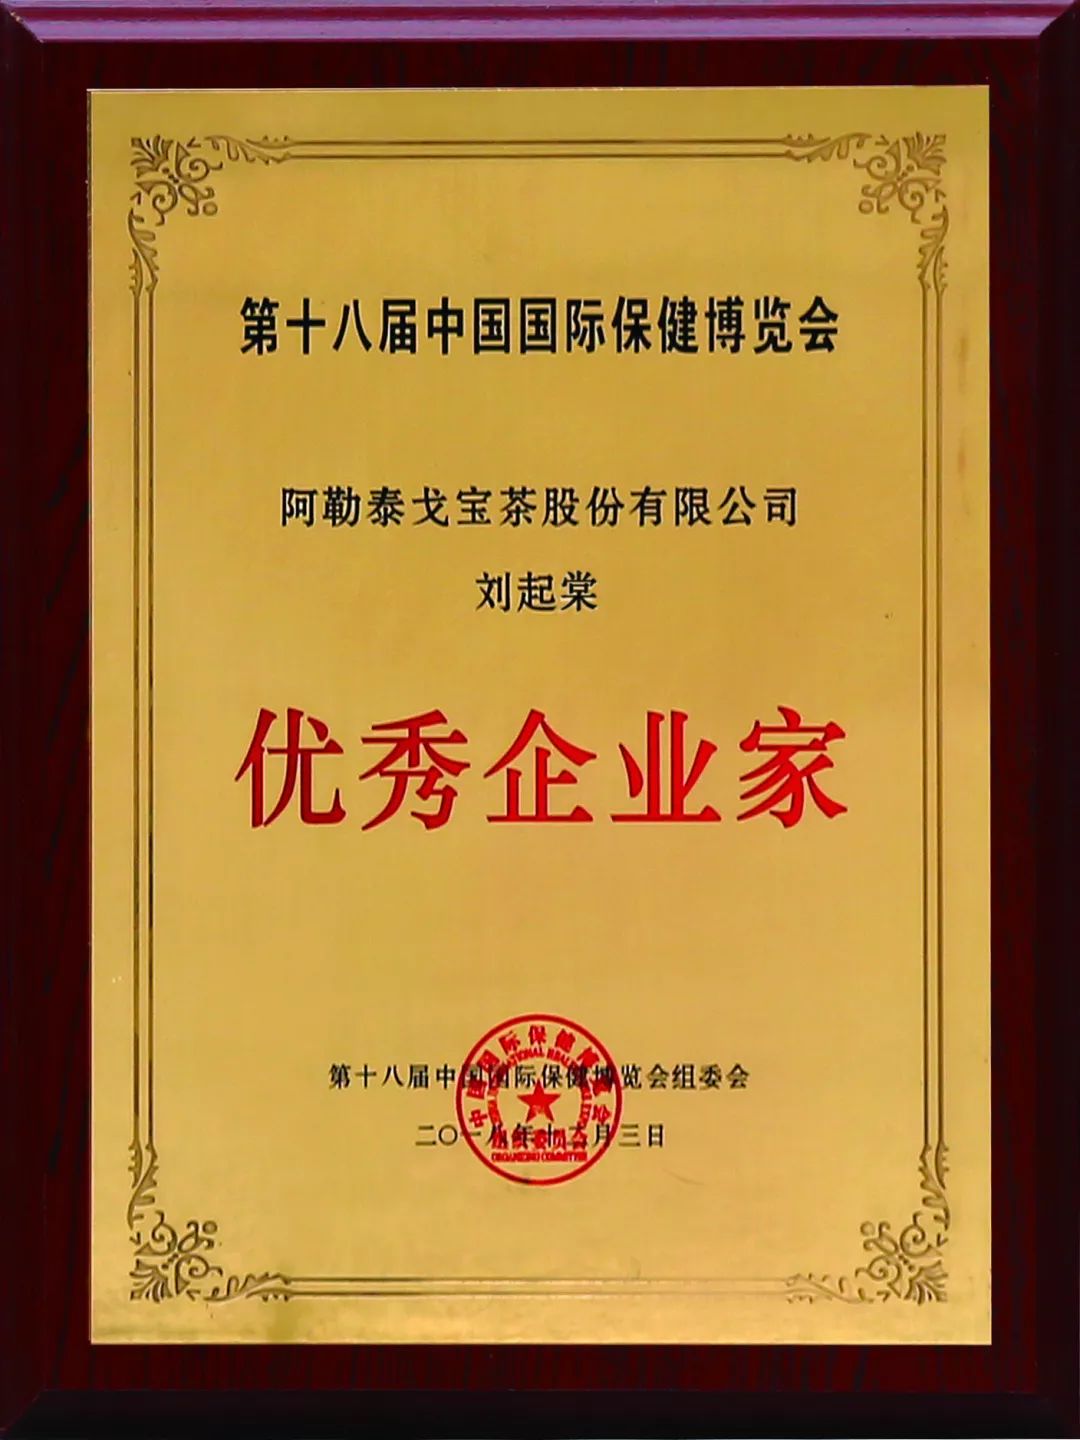 【戈宝红麻茶】在第18届中国国际保健博览会上荣获多项大奖(图4)